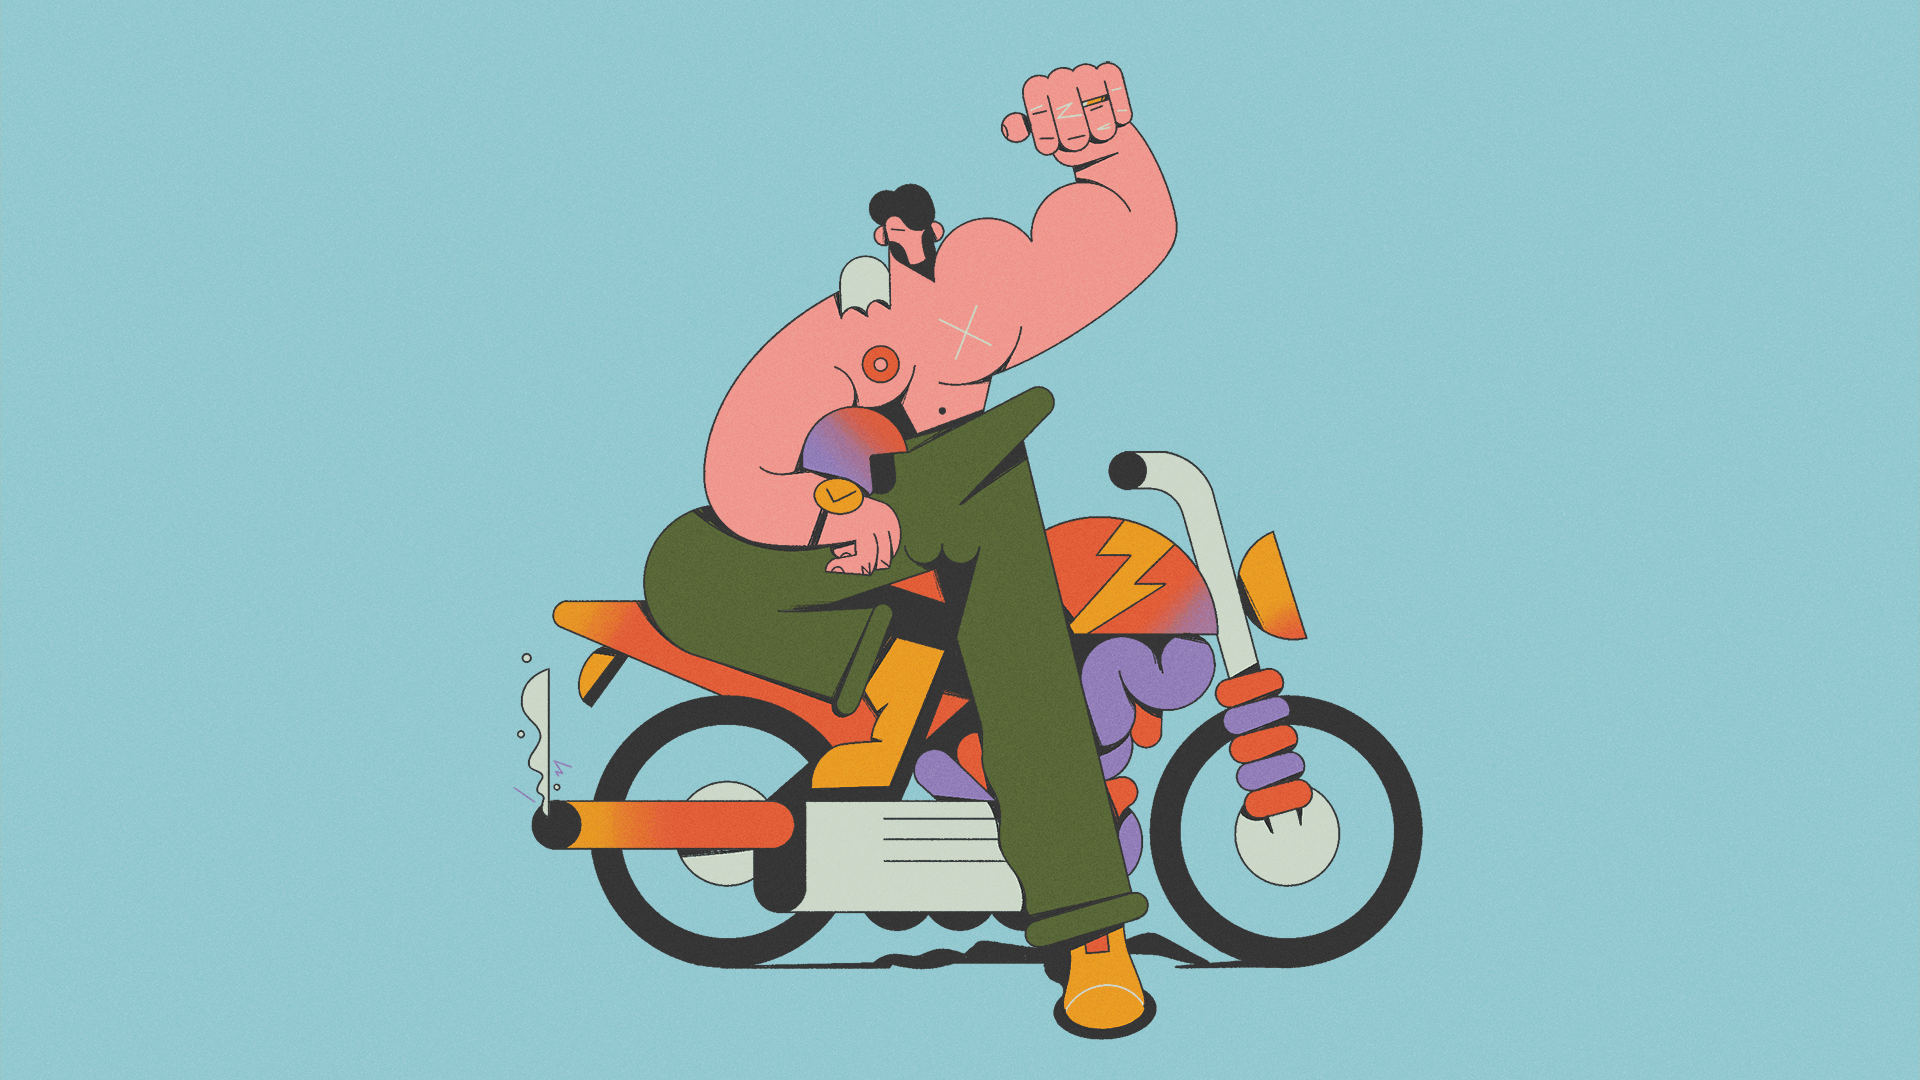 Homem de pênis ereto, mostrando que é forte com o braço levantado, em cima de uma moto. Ilustração por Fabrizio Lenci